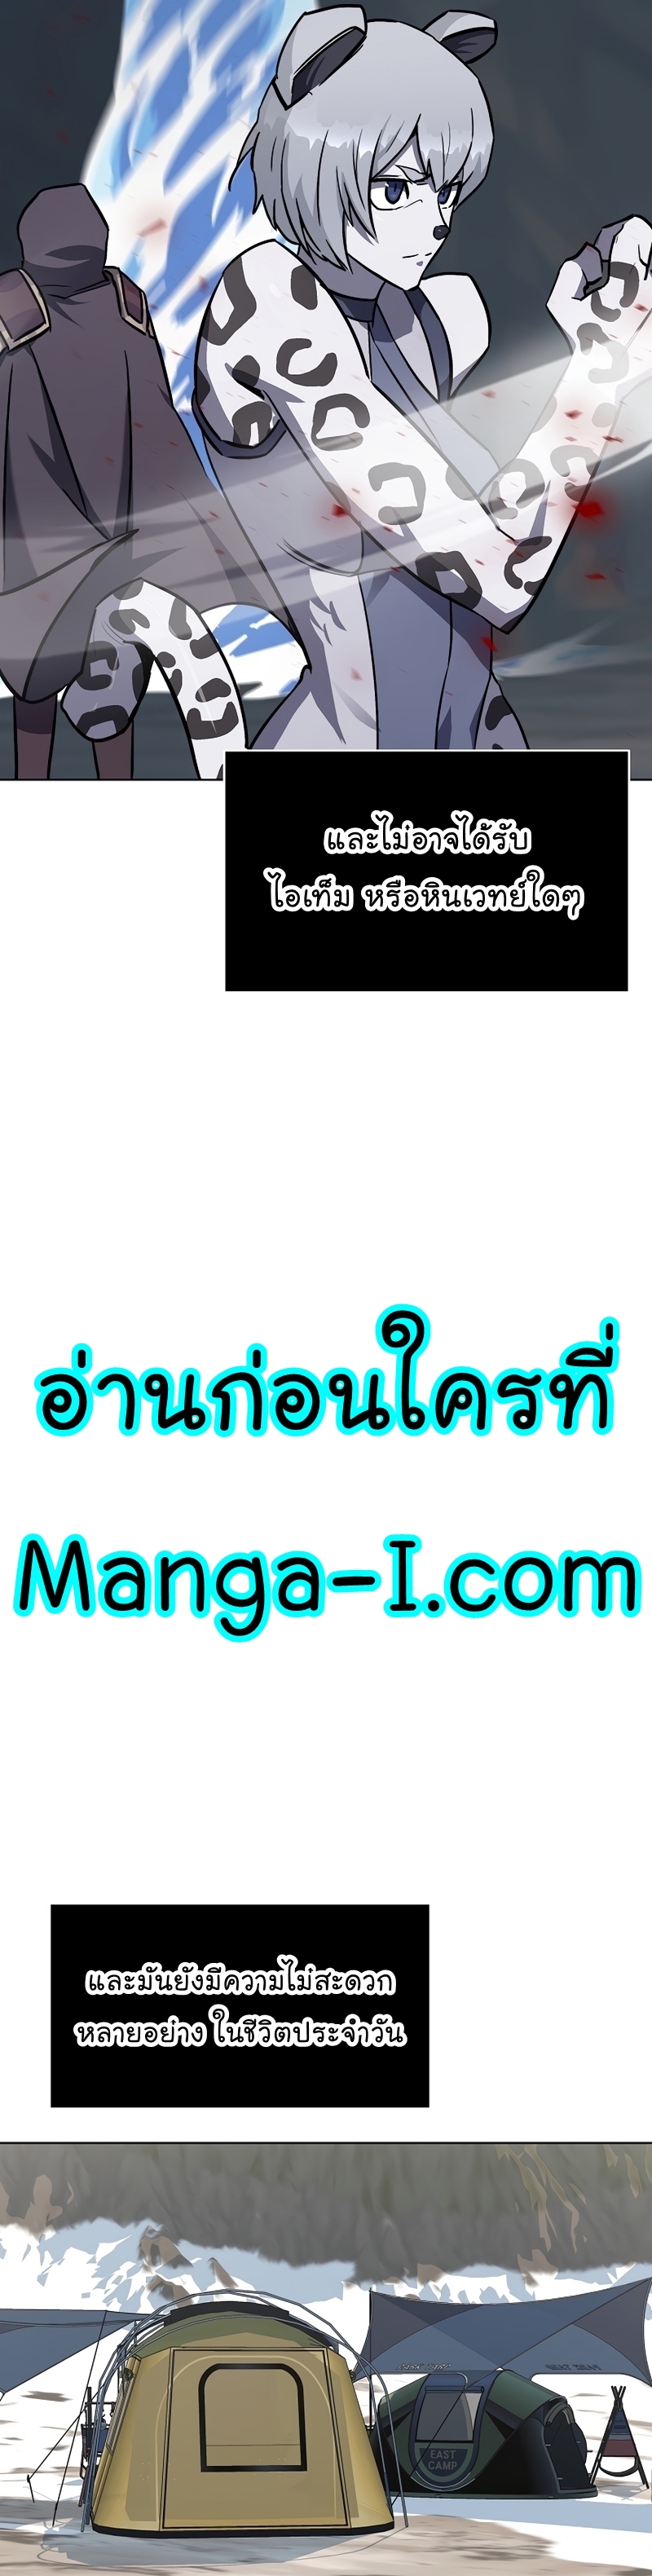 Manga Manhwa Level 1 Player 62 (40)